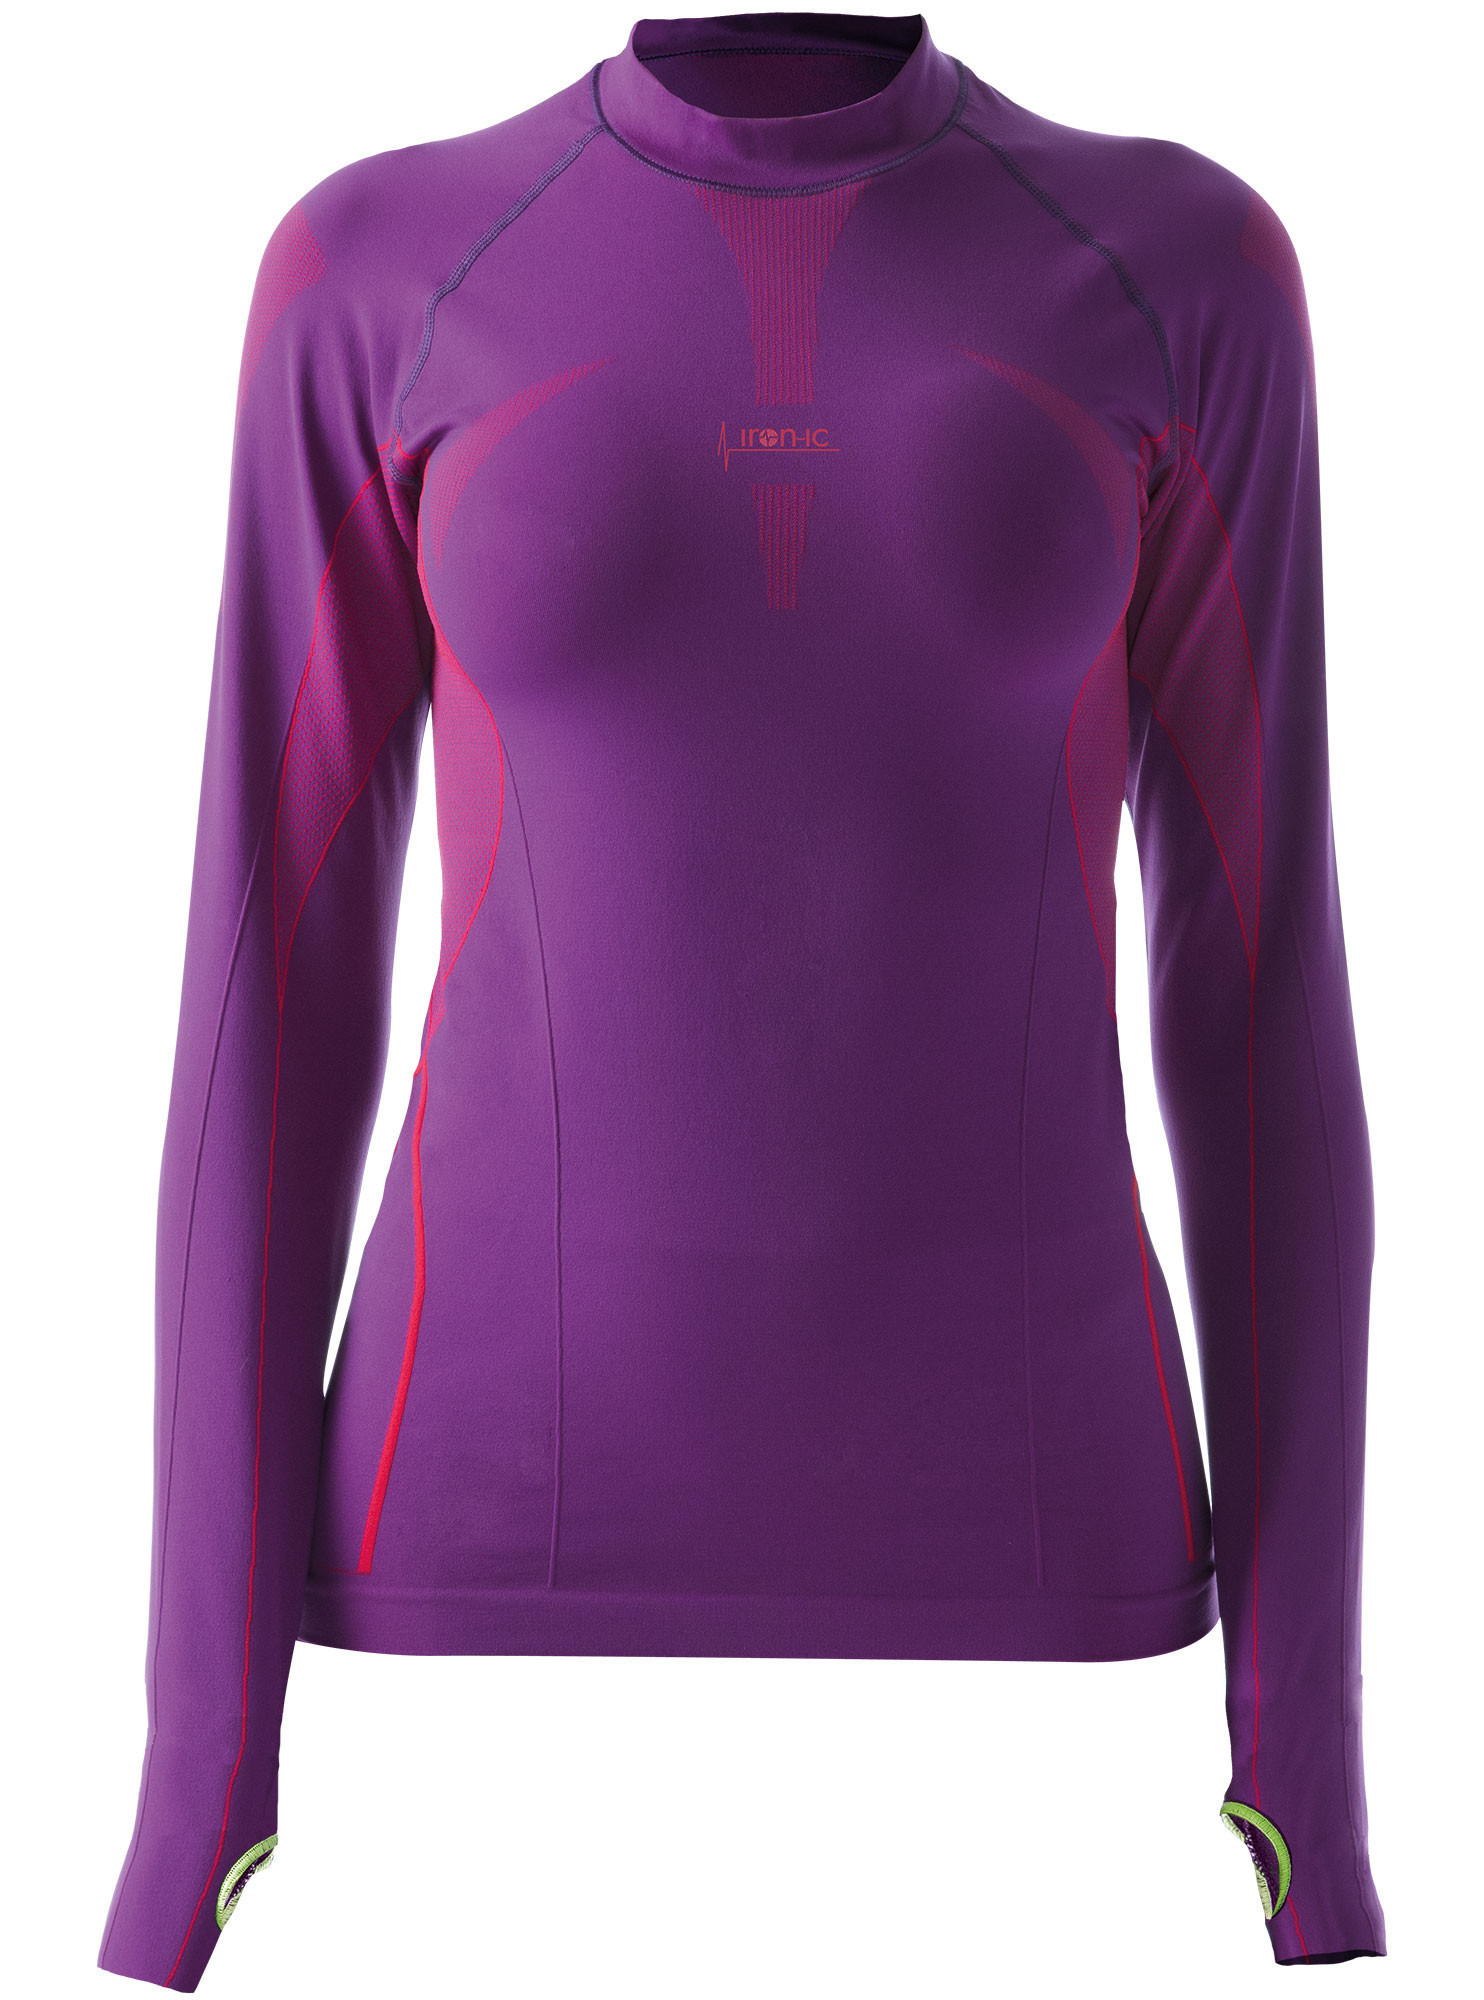 Dámské sportovní tričko s dlouhým rukávem fialová Barva: Violet model 15131932 Velikost: XS/S - IRON-IC